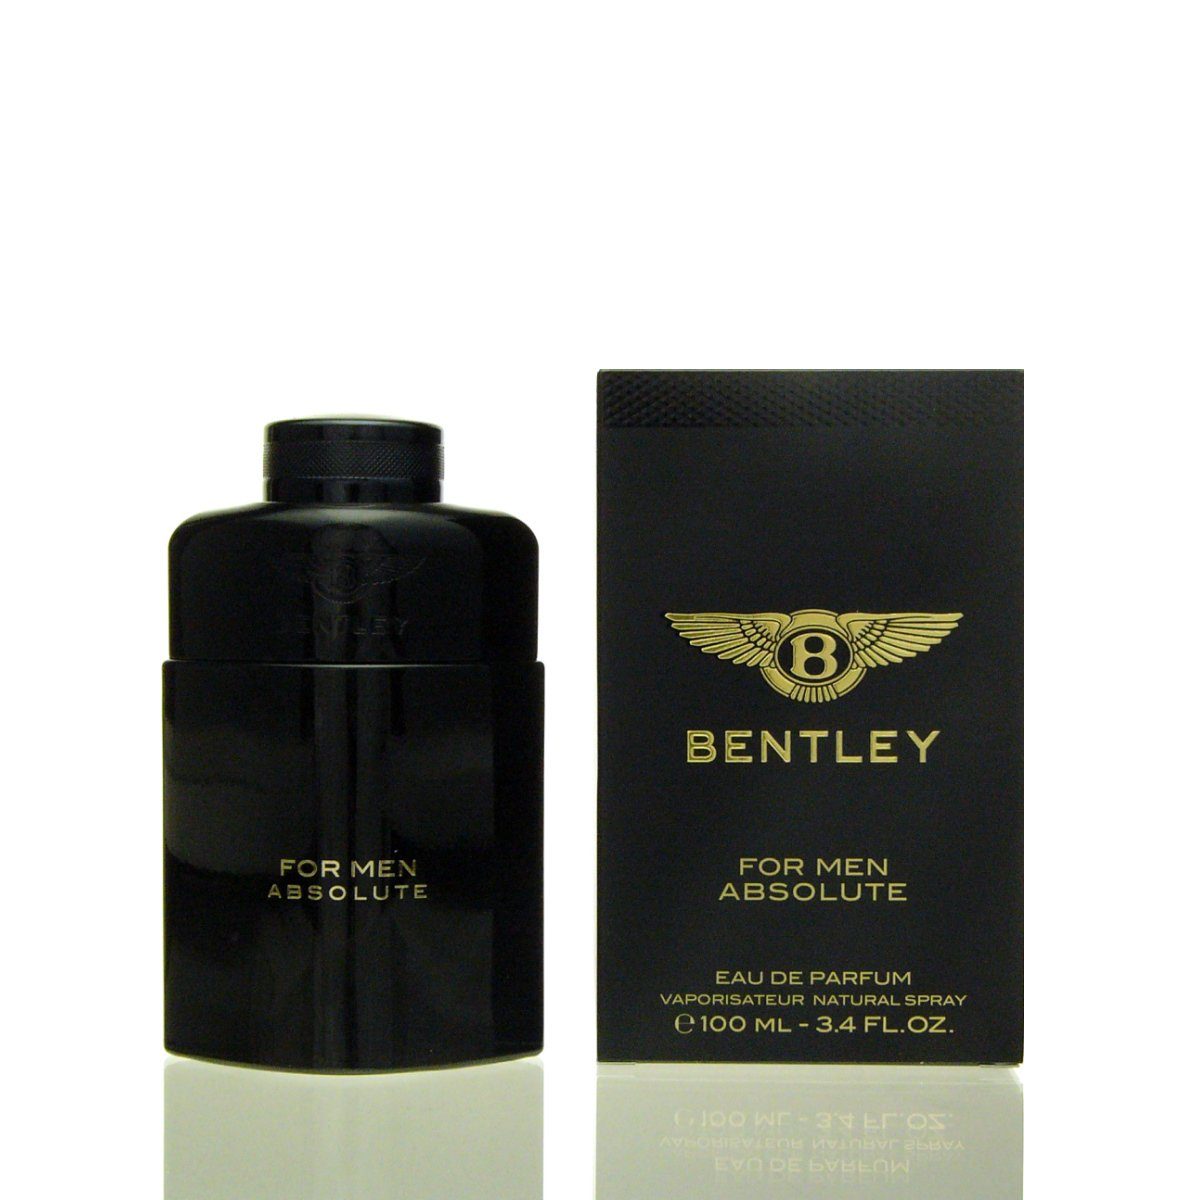 BENTLEY Парфюми Bentley Fragrances for Men Absolute Парфюми 100 ml